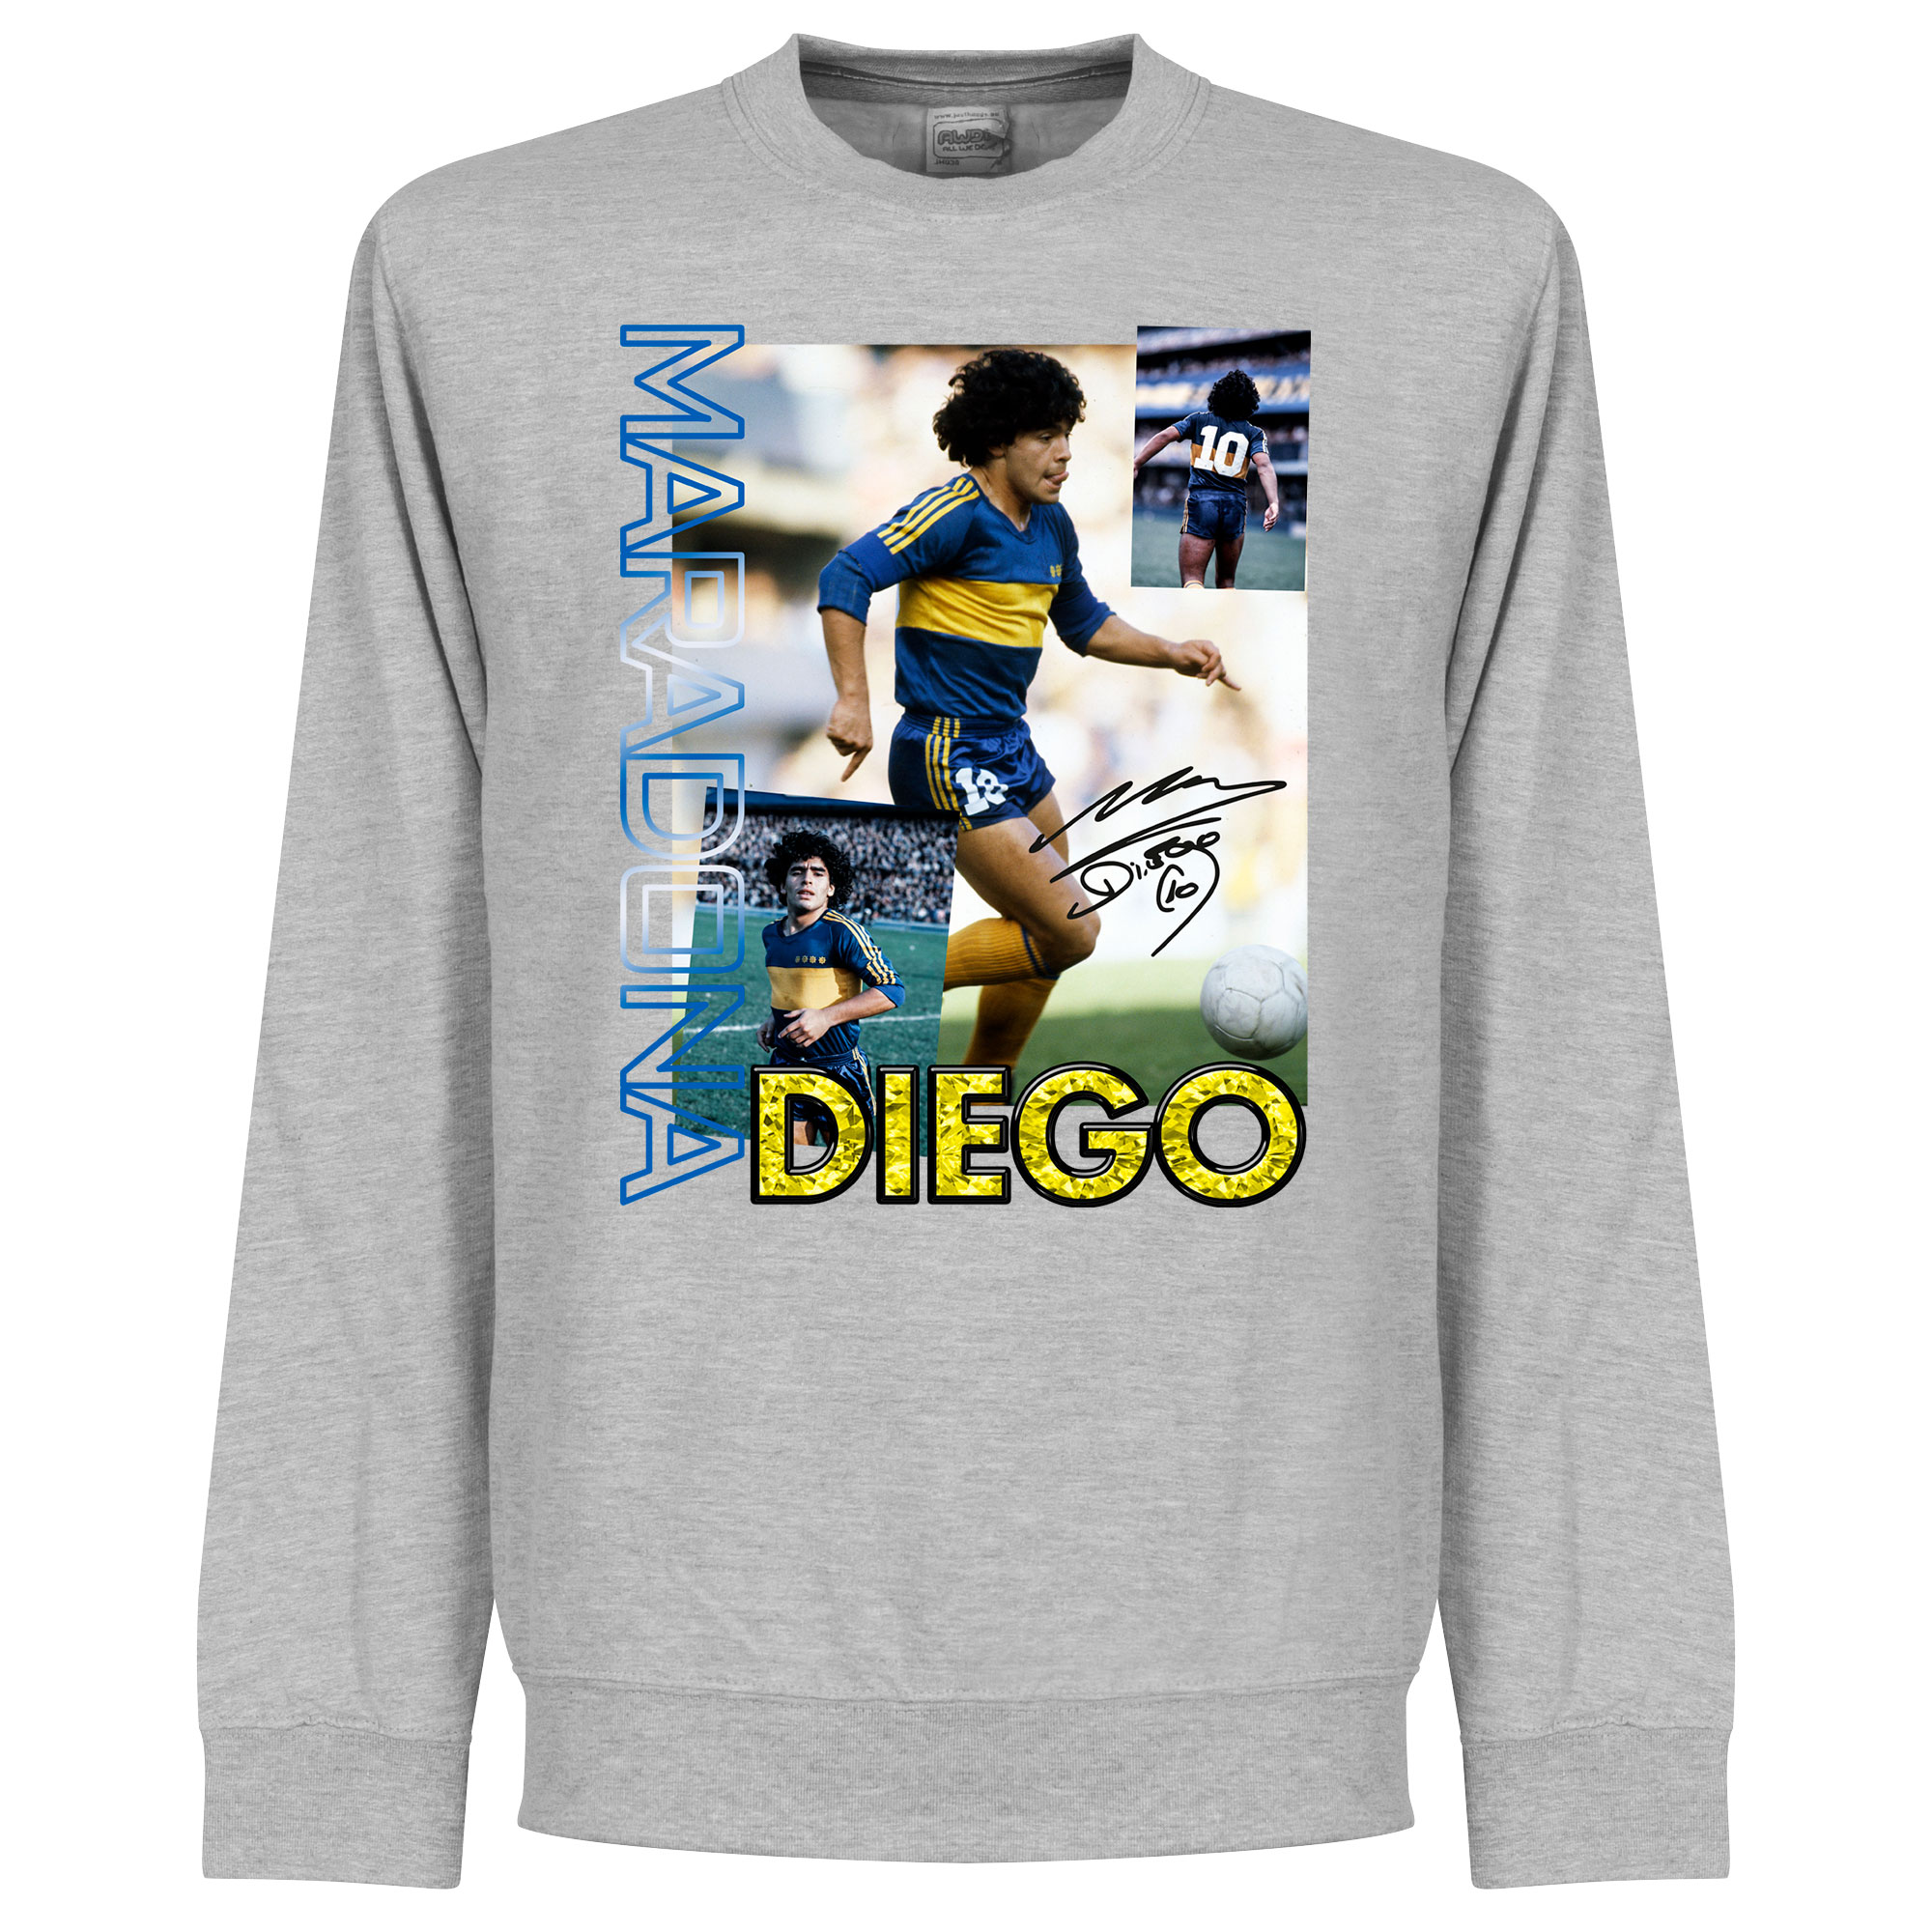 Diego Maradona Boca Old Skool Sweater - Grijs - XXXL